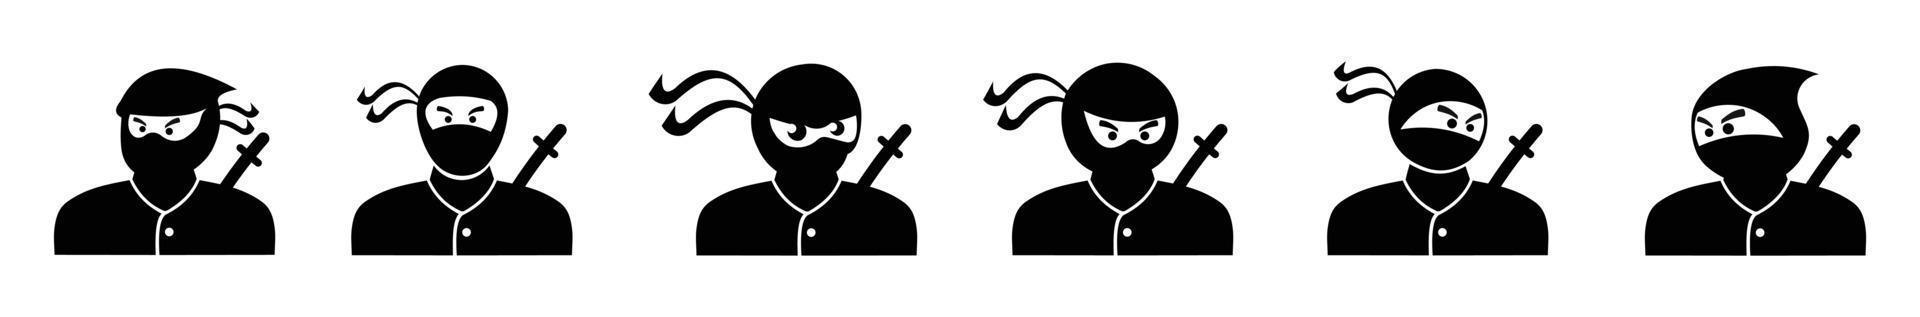 set van silhouet pictogram ninja ontwerp, set van ninja's in verschillende poses op witte achtergrond vector